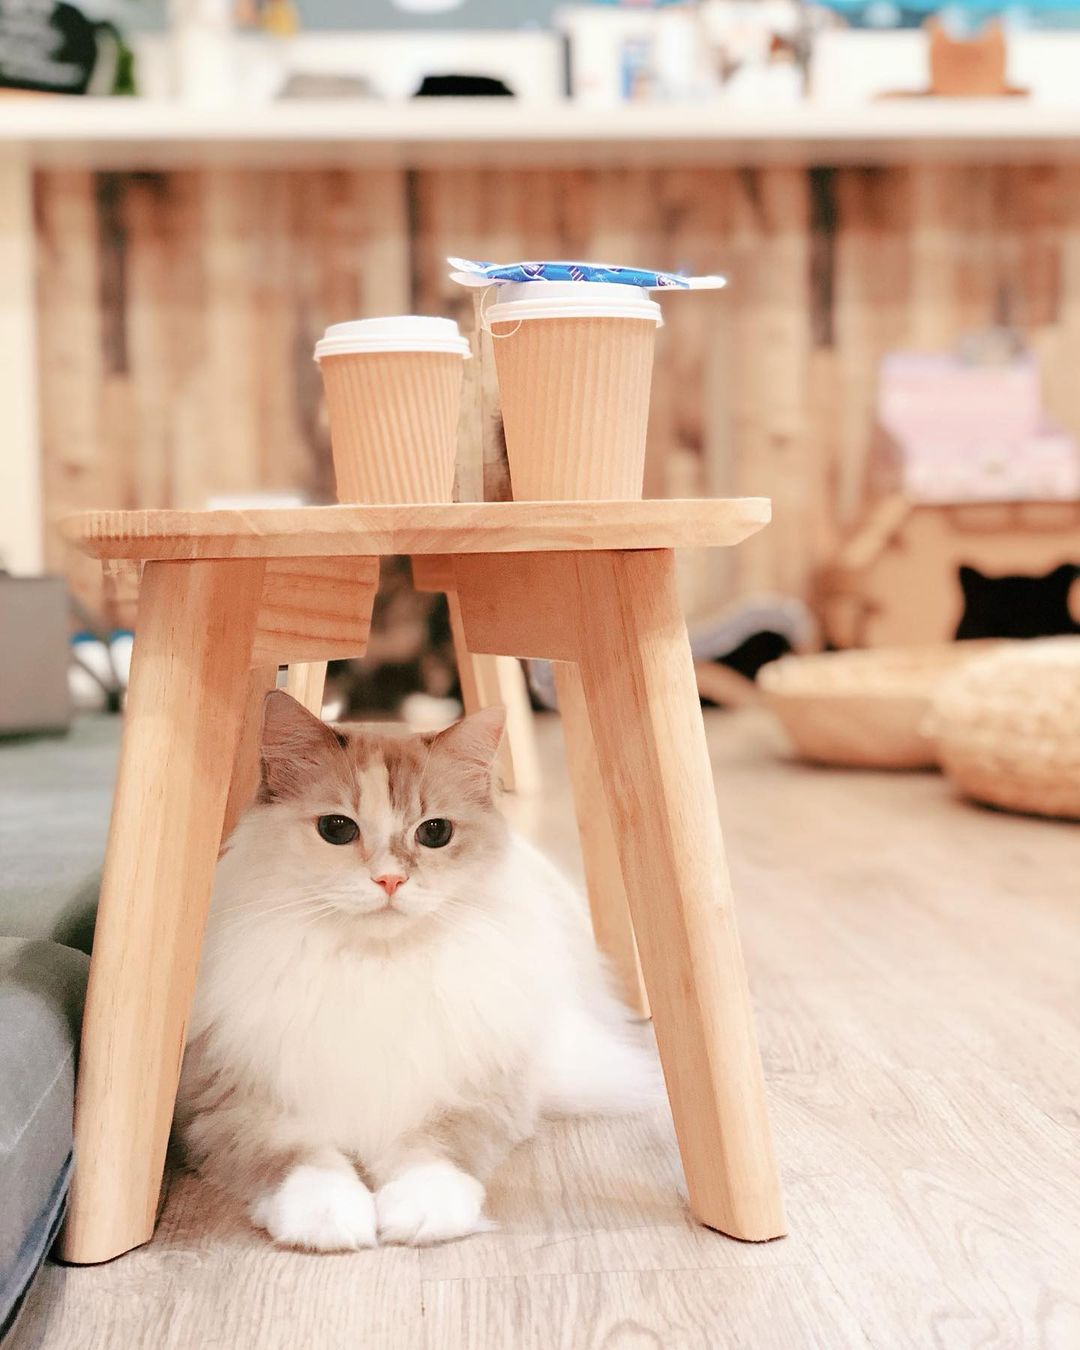 cat cafes singapore - Meomi Cat Cafe ragdoll